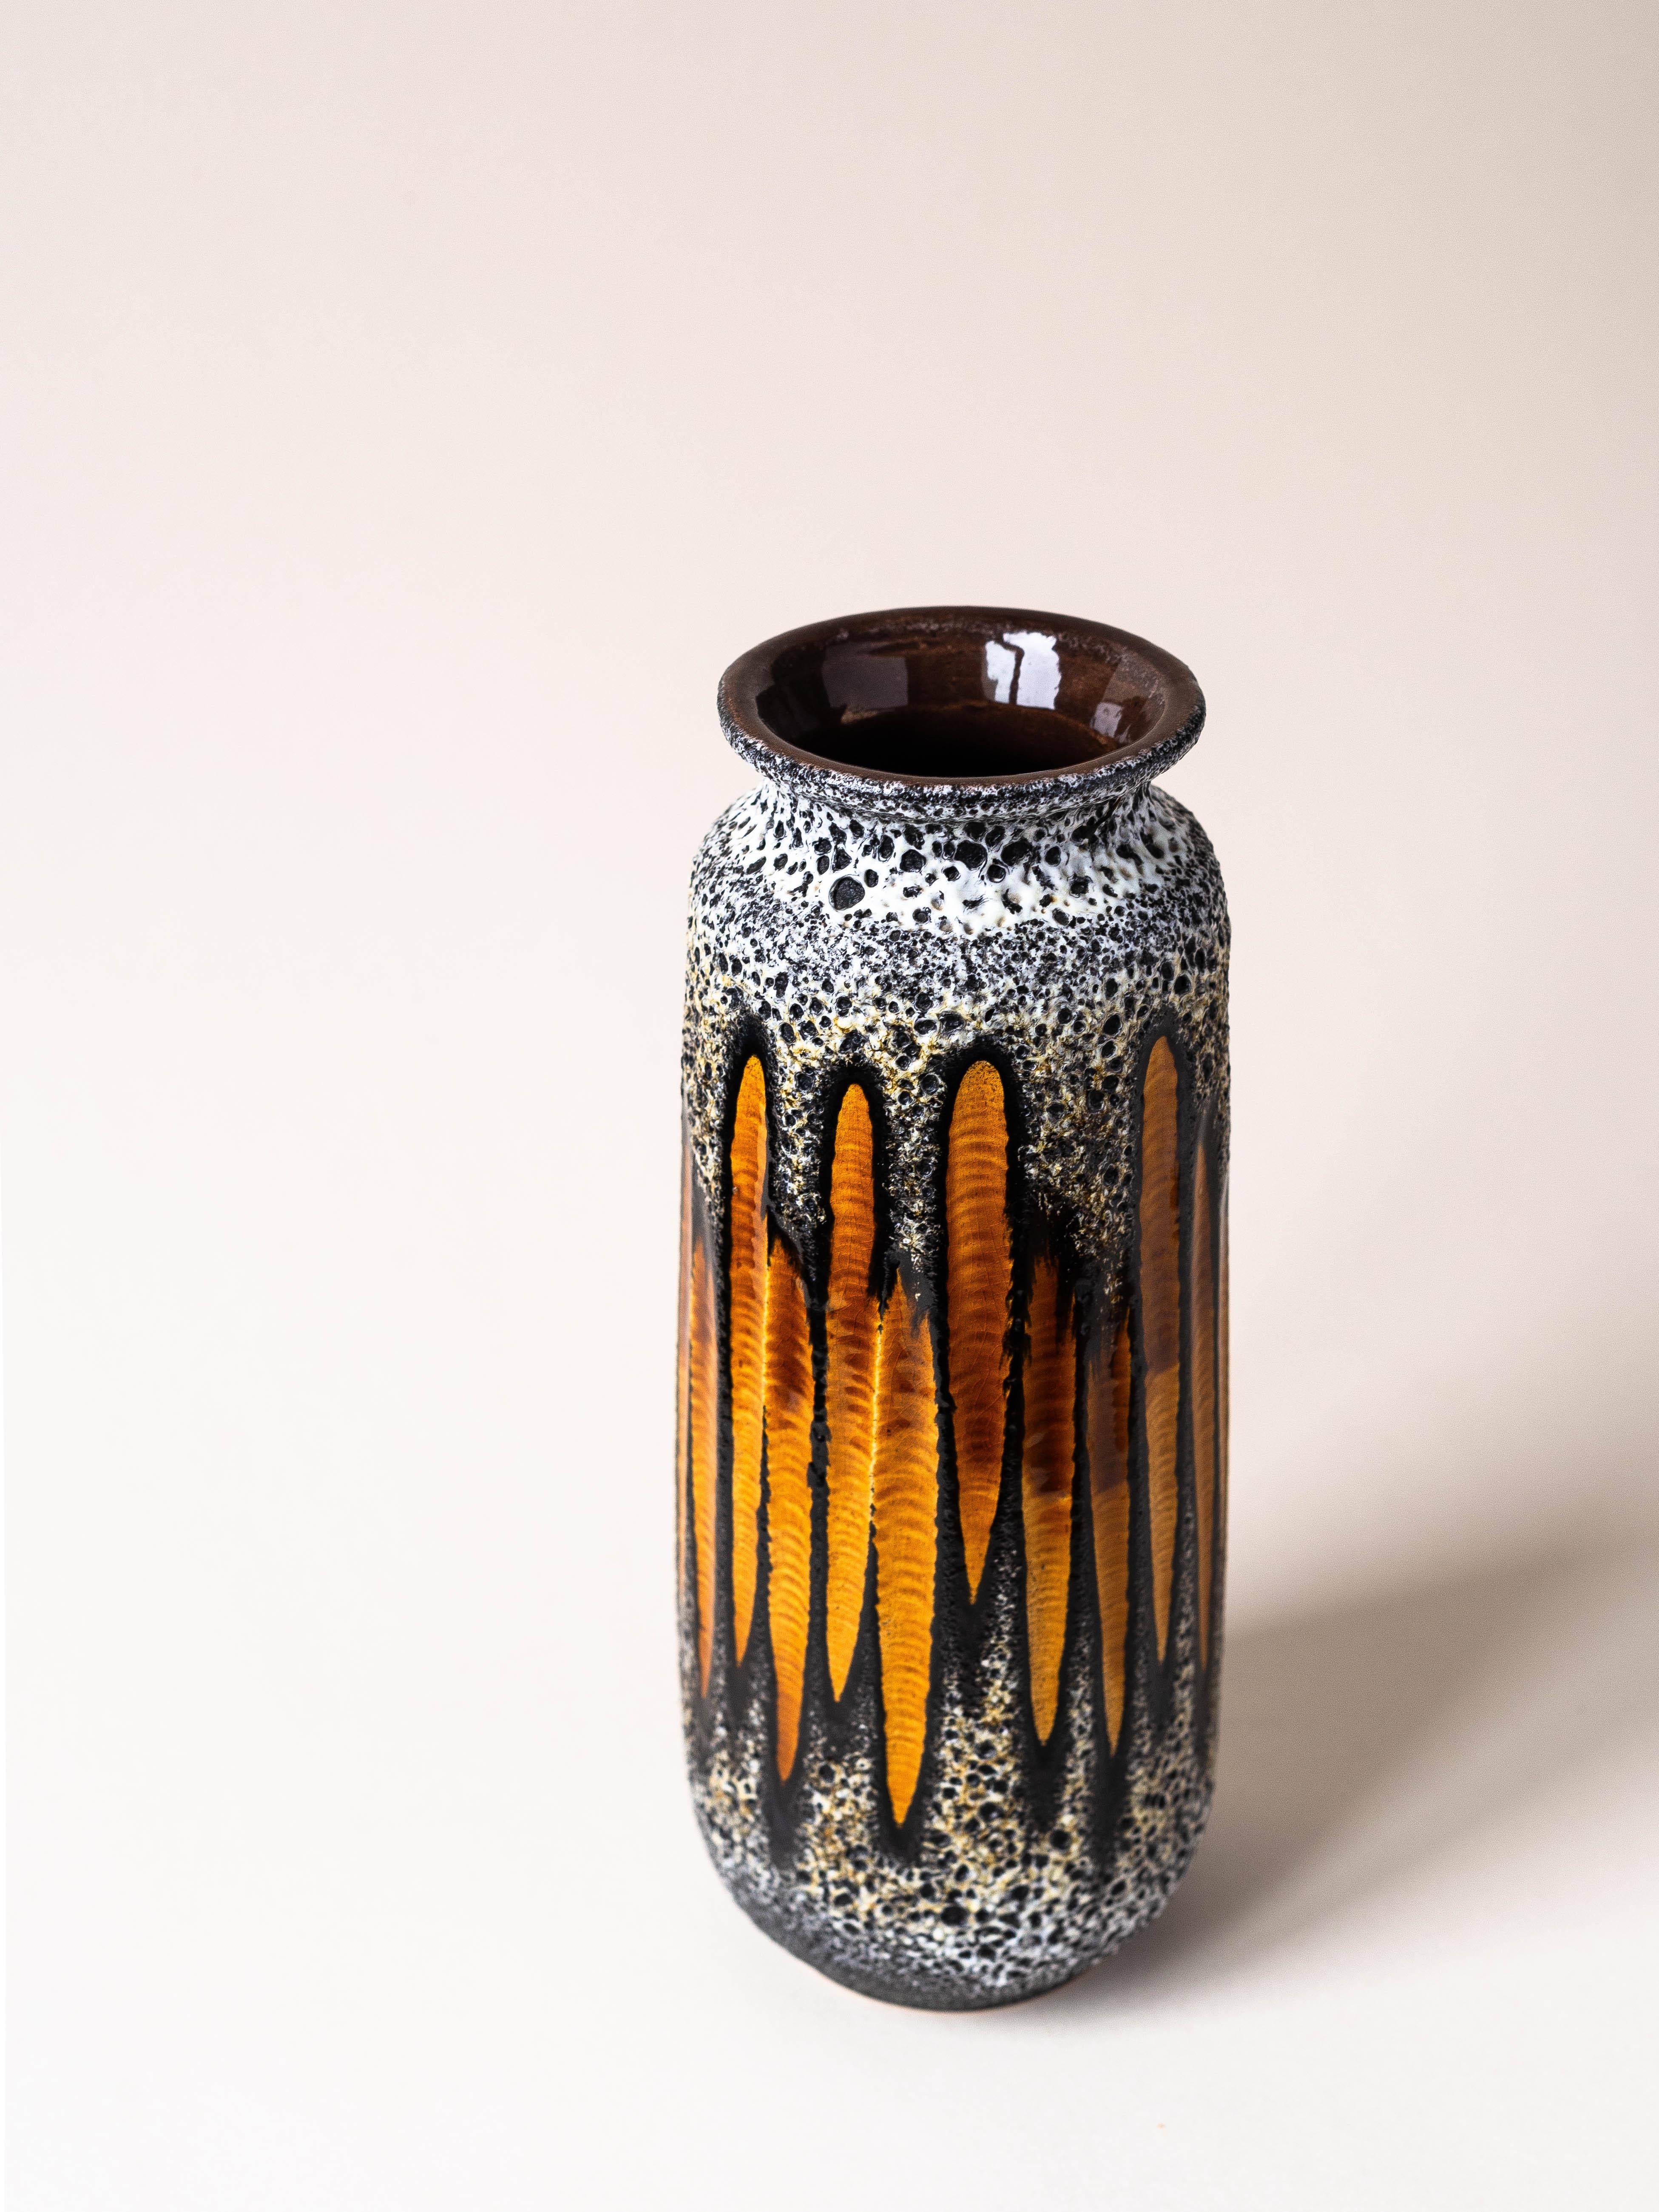 Vase en céramique Lava, Allemagne de l'Ouest, vers 1970.

Joli travail sur les motifs géométriques orang, qui sont émaillés dans une finition brillante. 

Bon contraste avec la finition générale de la lave, avec un aspect mat.

Une pièce de choix ! 